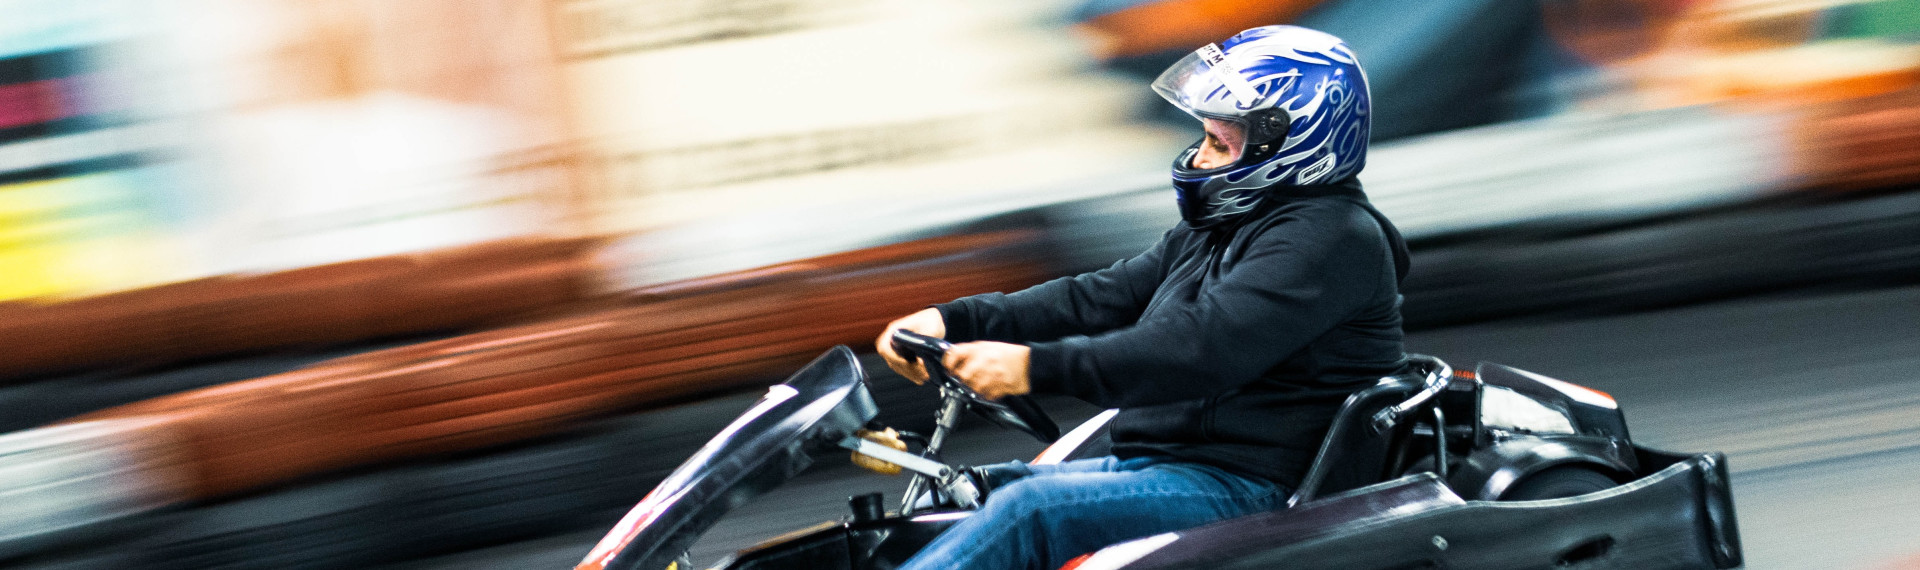 Karting en extérieur à Bruxelles | LE Site EVG  | Pissup Voyages